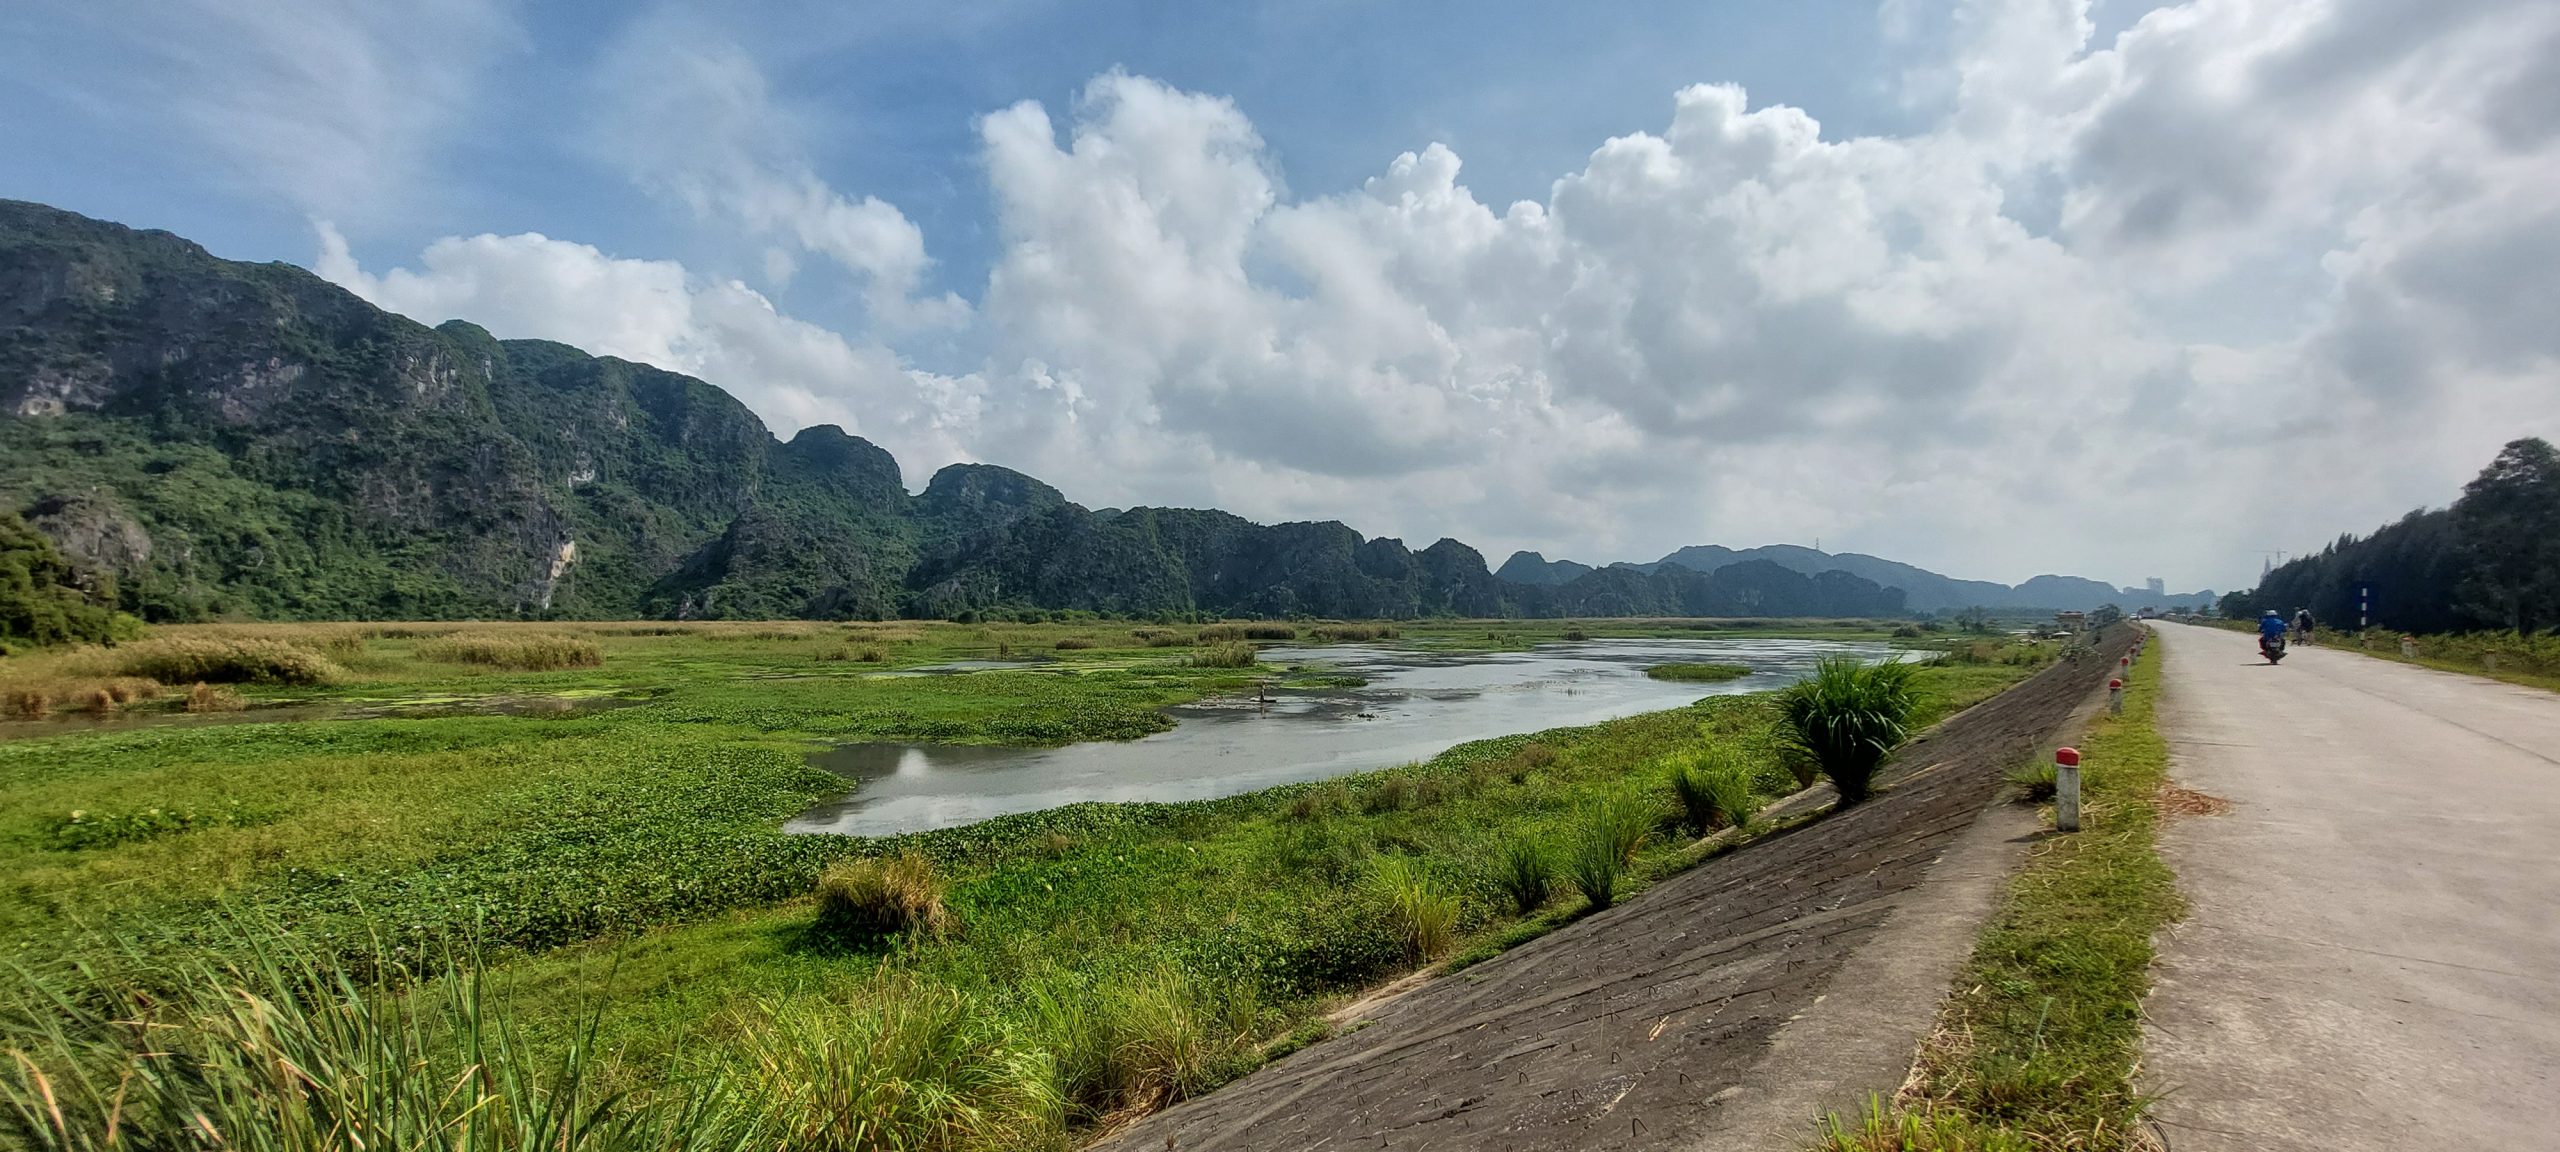 Die sogenannte Trockene Halongbucht bei Ninh Binh - ein Karstgebirge